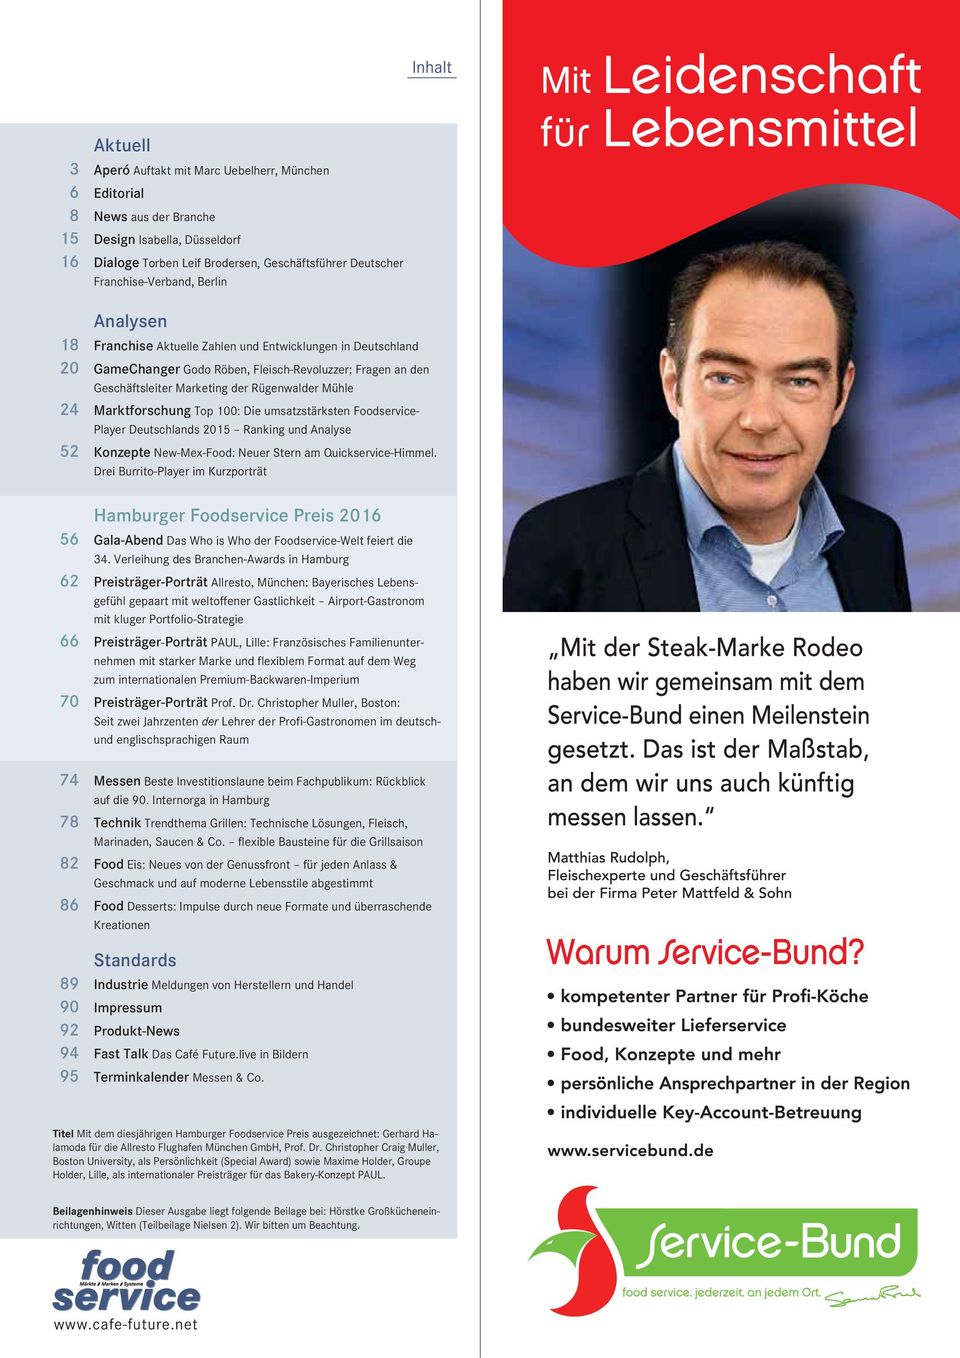 Mühle 24 Marktforschung Top 100: Die umsatzstärksten Foodservice- Player Deutschlands 2015 Ranking und Analyse 52 Konzepte New-Mex-Food: Neuer Stern am Quickservice-Himmel.